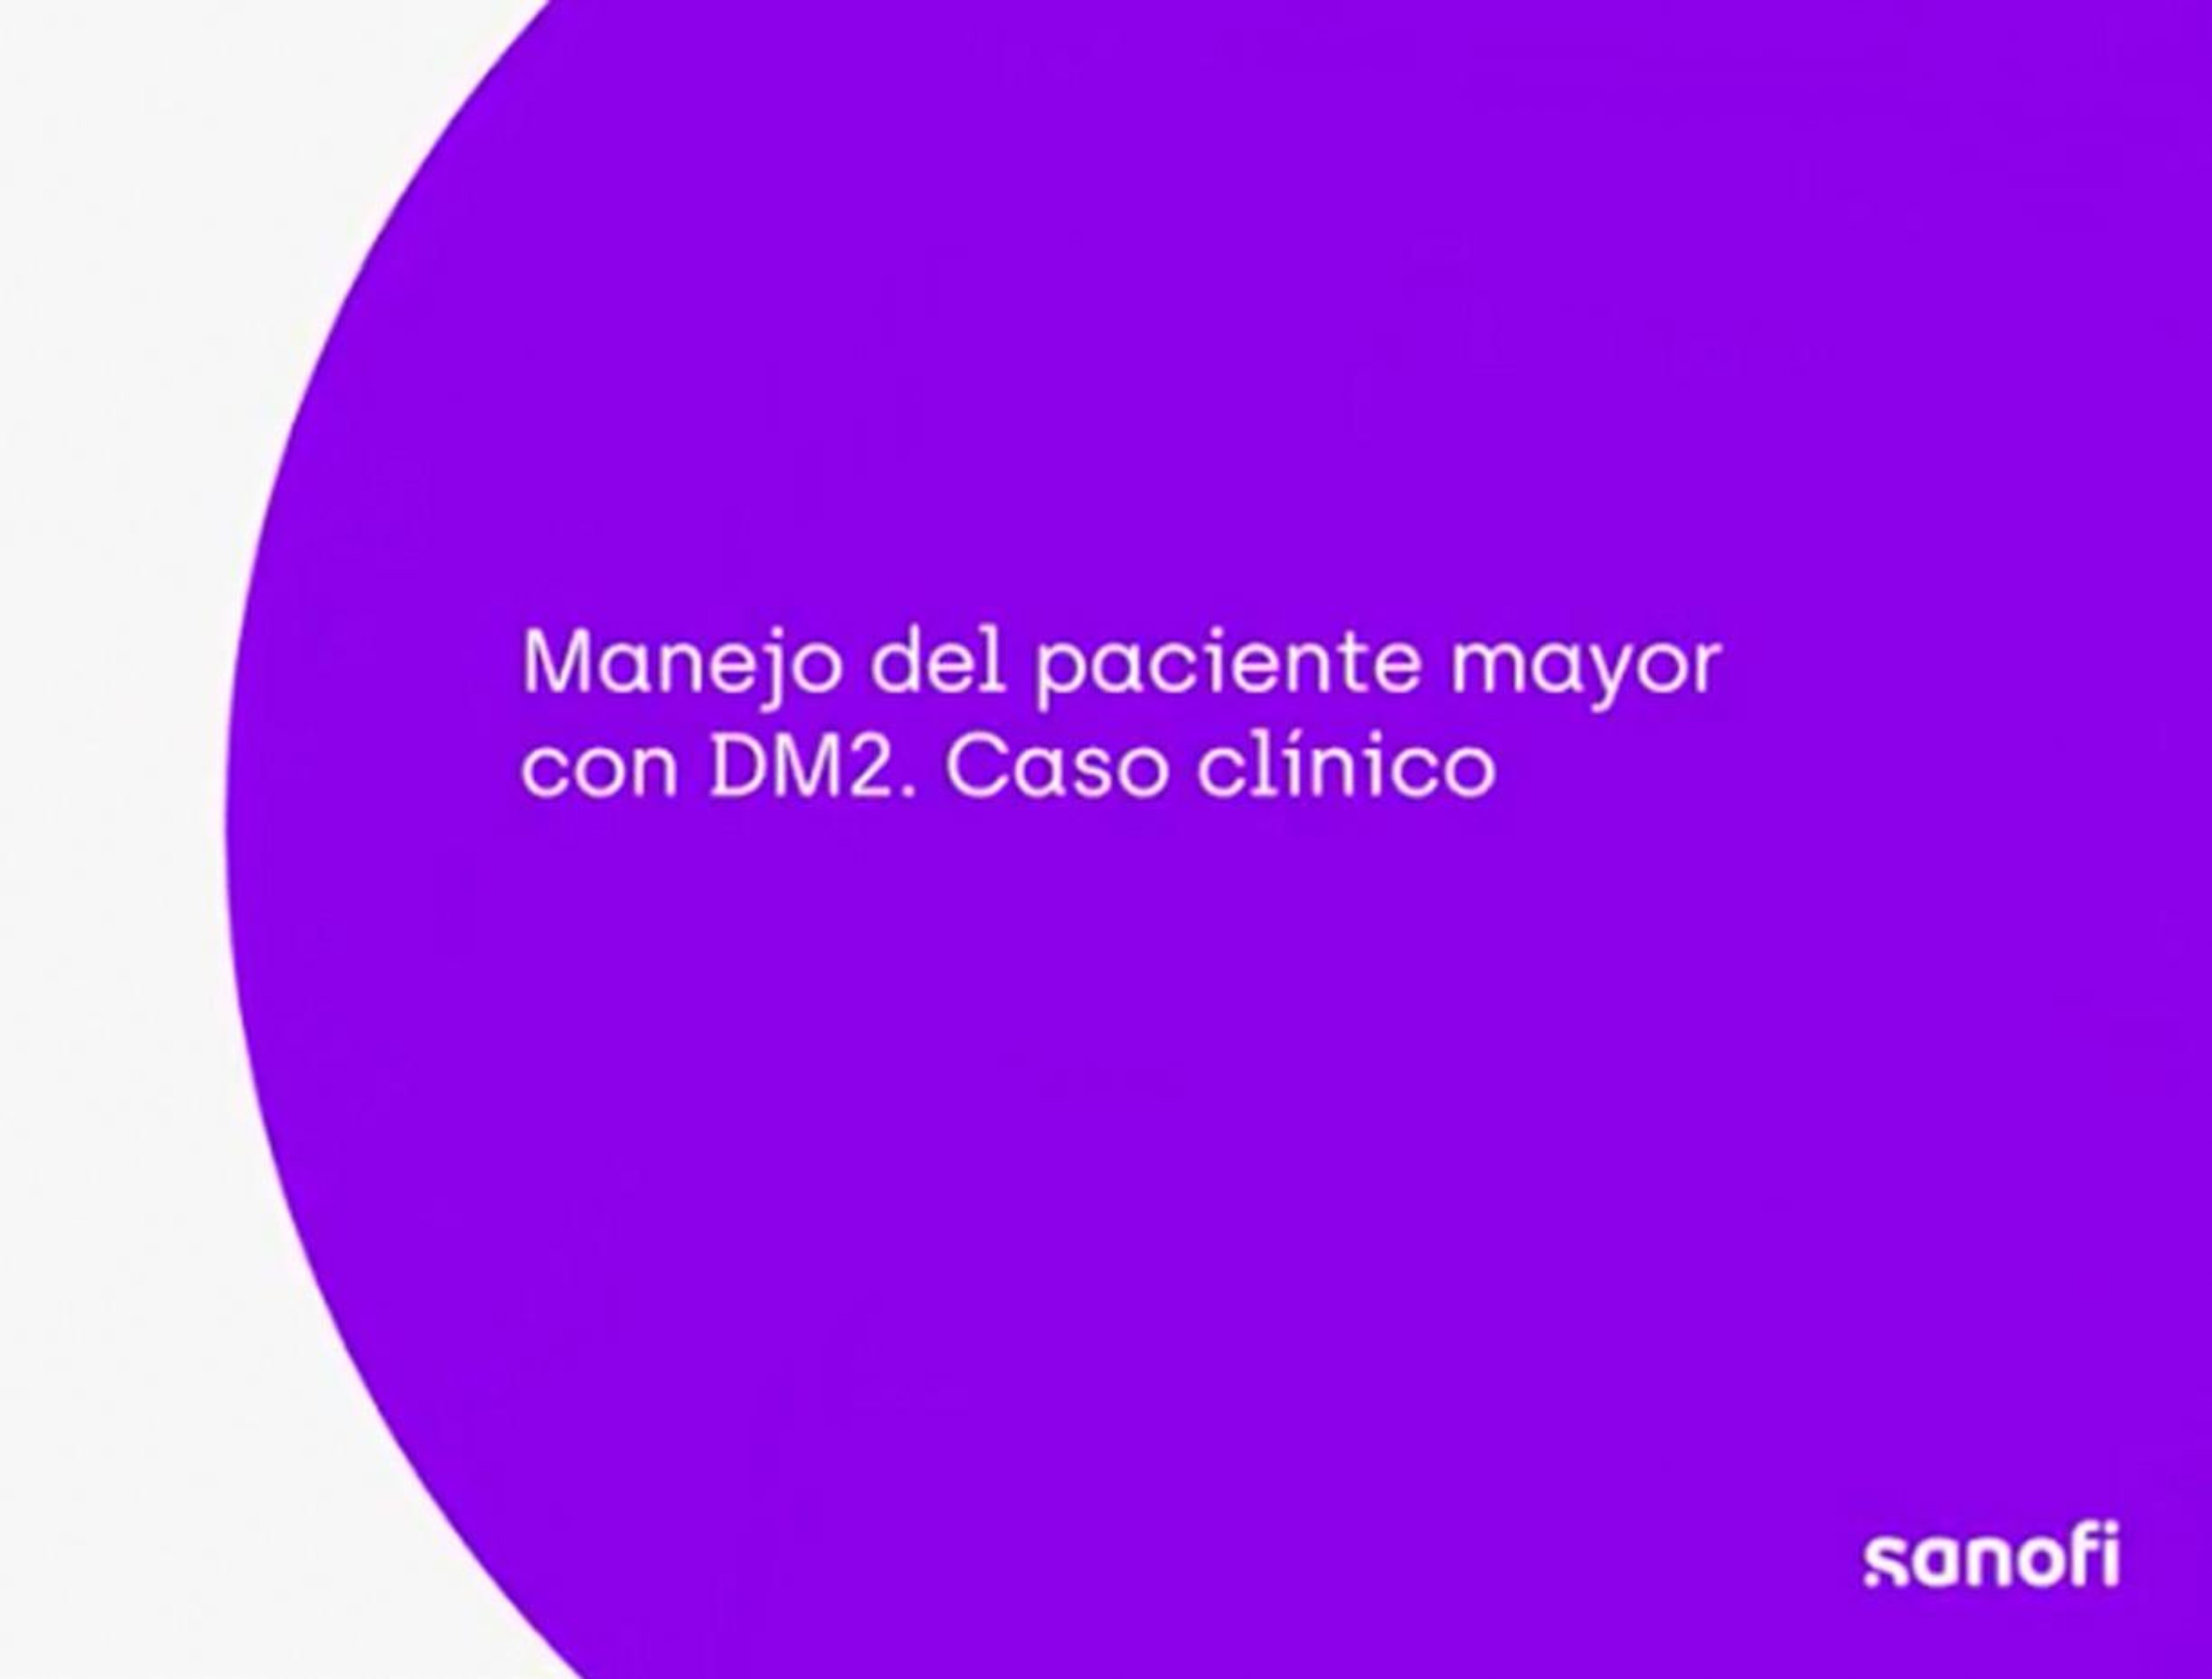 Caso clínico: Manejo del paciente mayor con DM2. Javier García Soidán.jpg